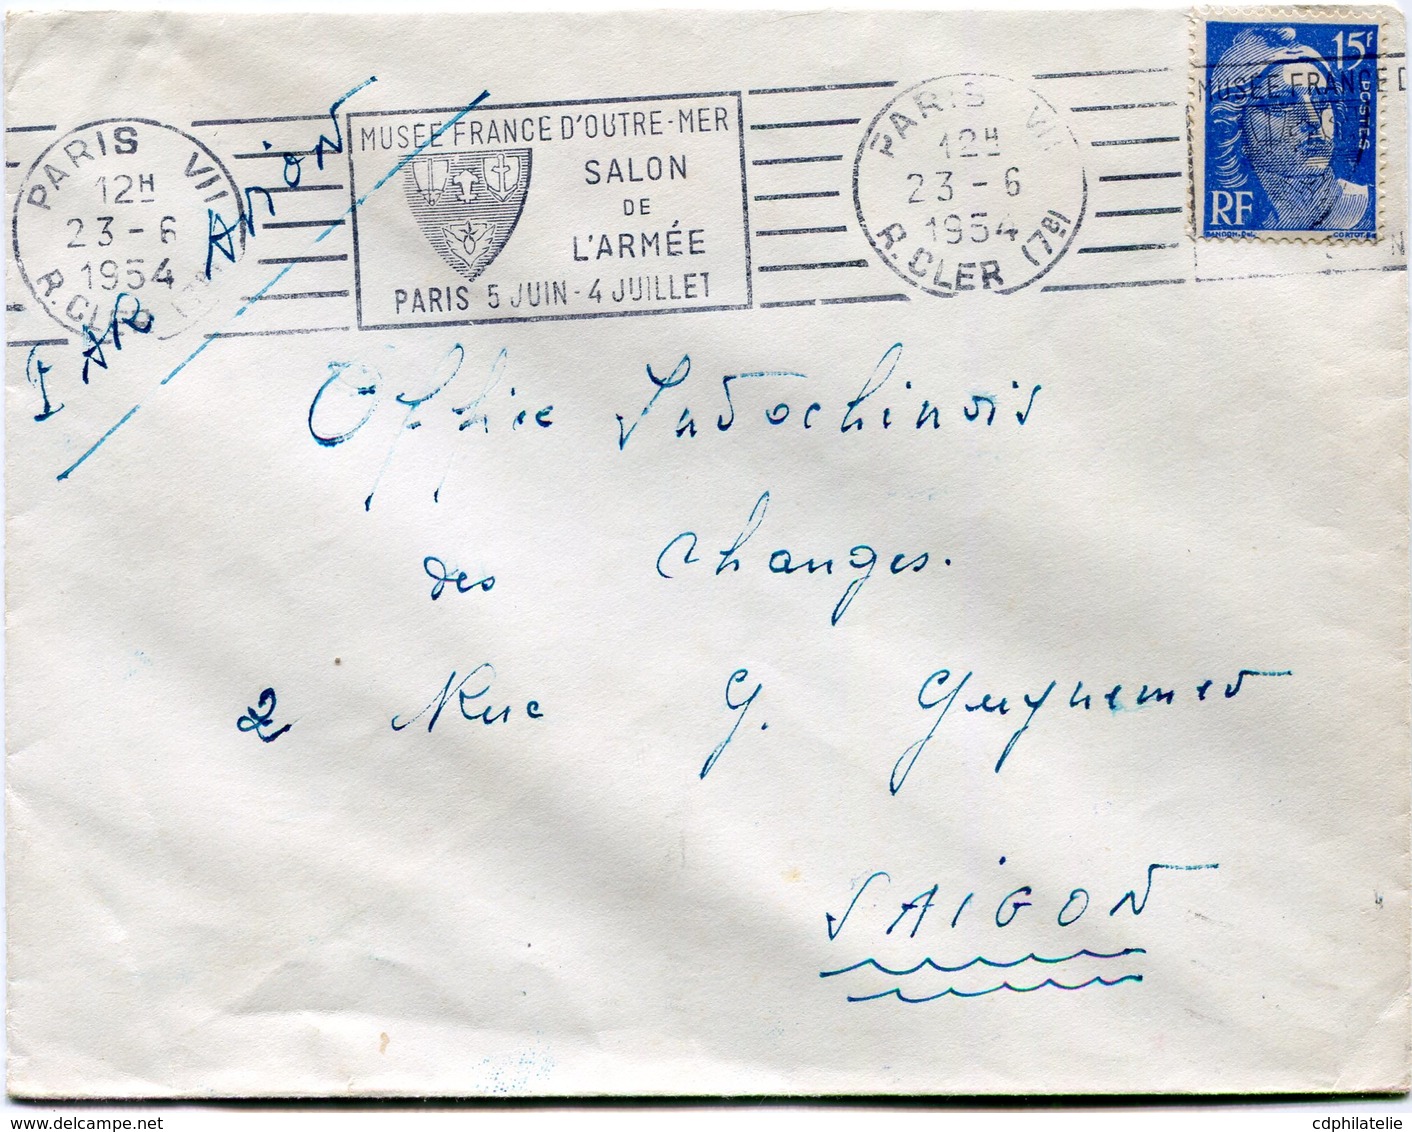 FRANCE LETTRE PAR AVION DEPART PARIS 23-6-1954 R. CLER POUR LE SUD VIETNAM - 1945-54 Marianne (Gandon)